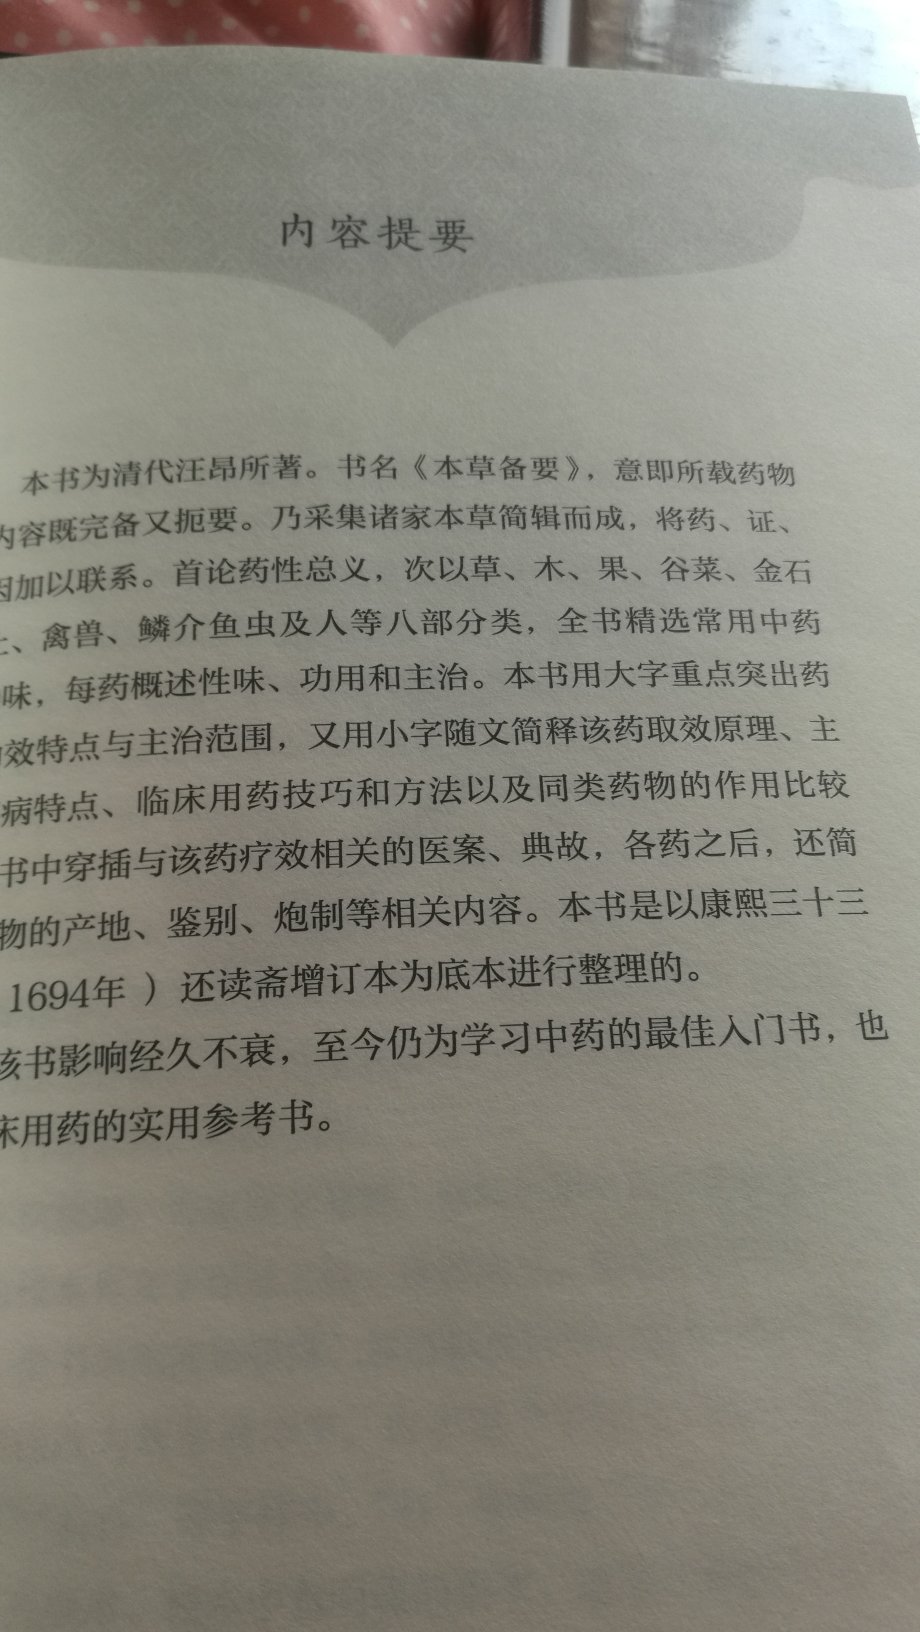 中医典籍，值得研究，明白就好。